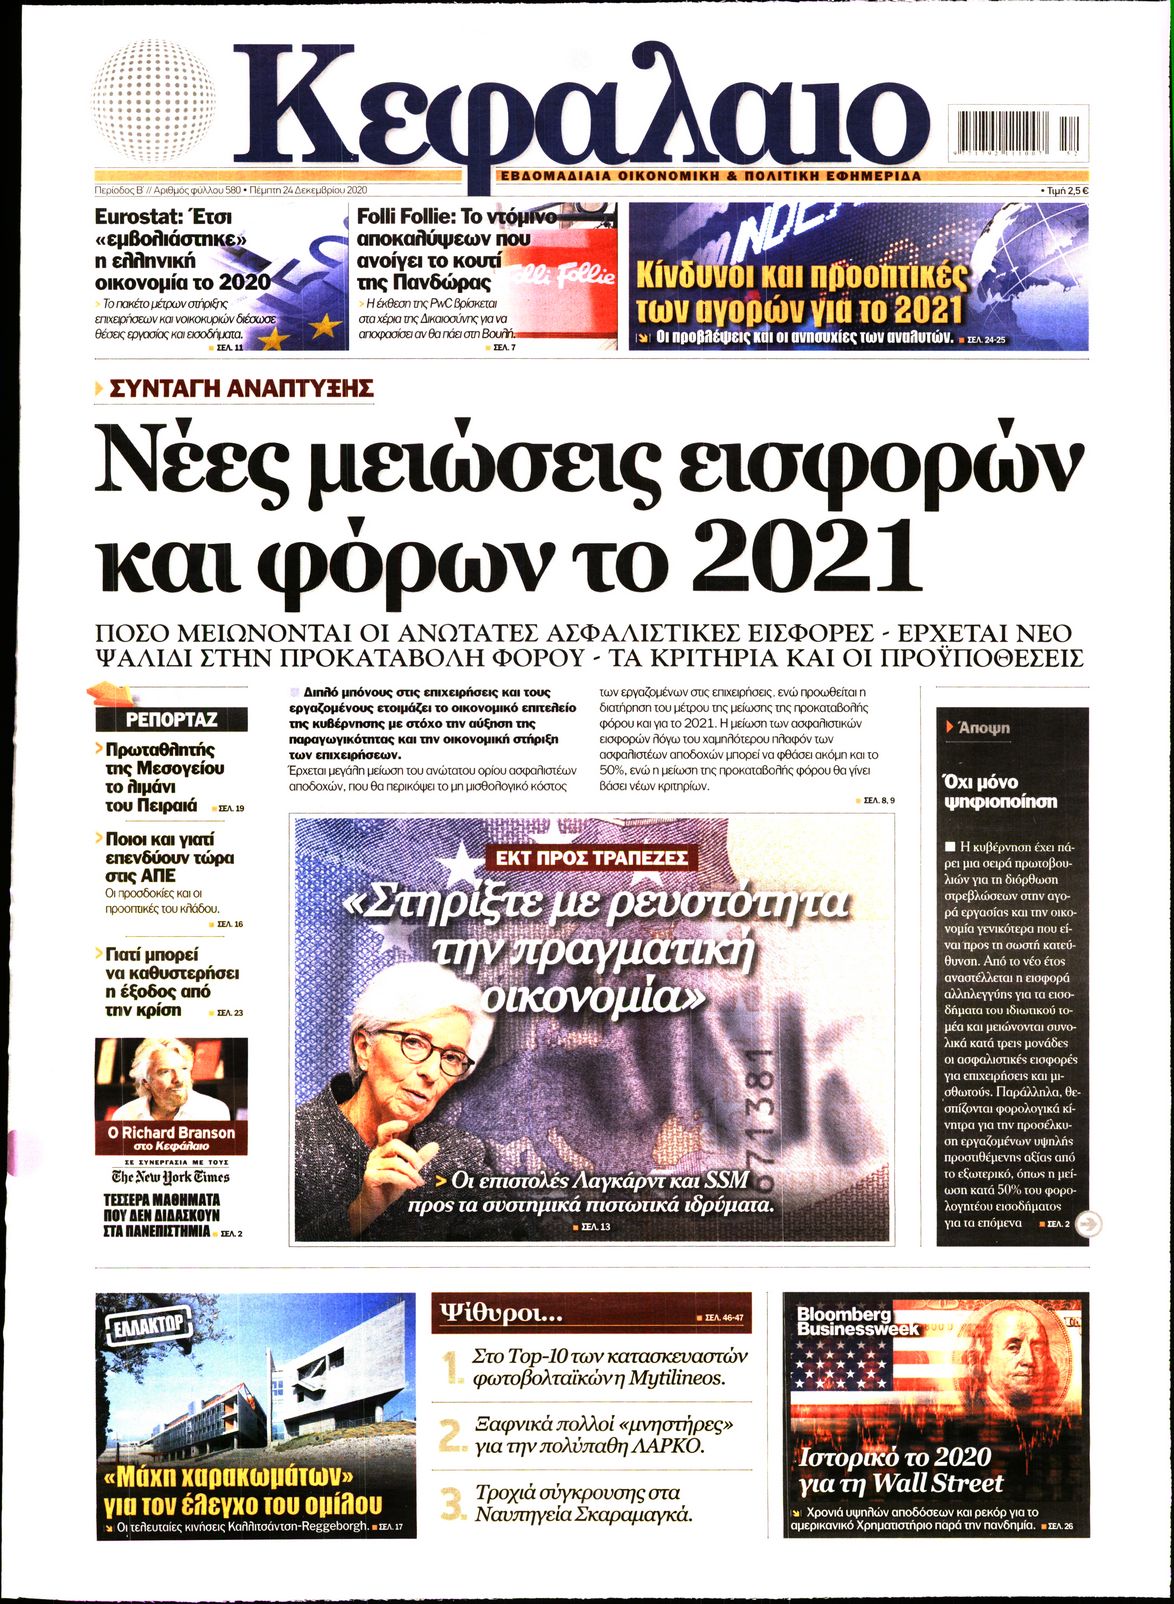 Εξώφυλο εφημερίδας ΚΕΦΑΛΑΙΟ Wed, 23 Dec 2020 22:00:00 GMT